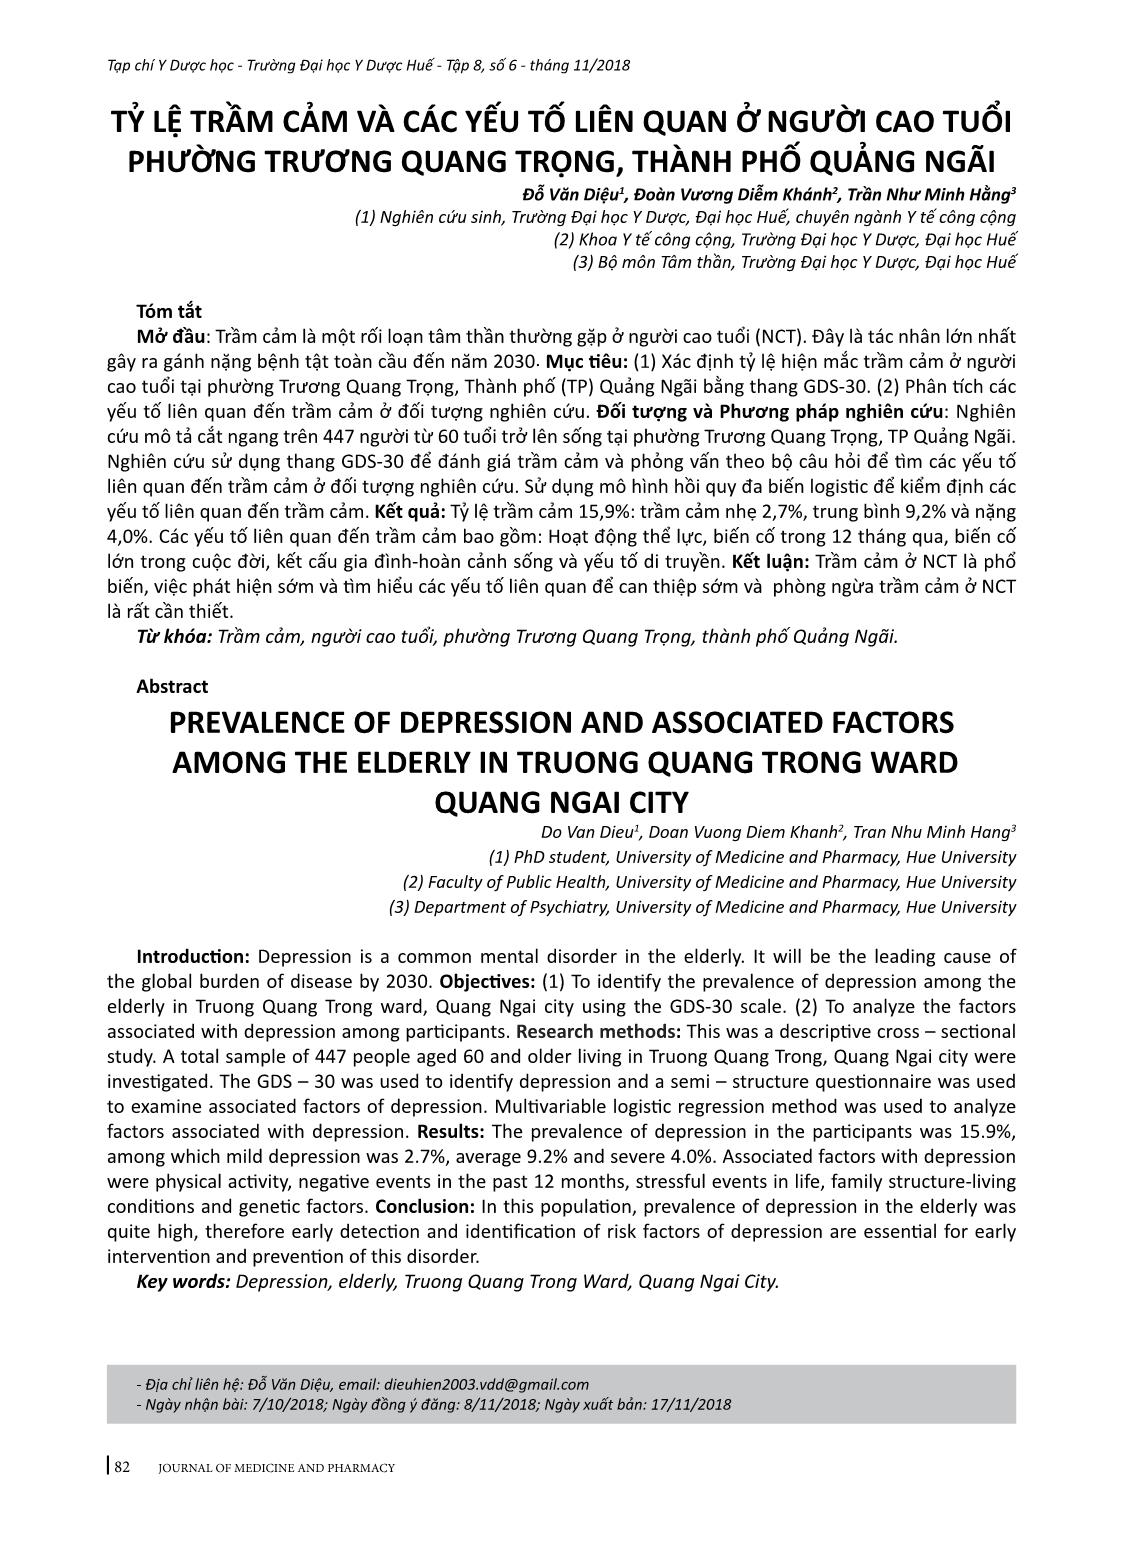 Tỷ lệ trầm cảm và các yếu tố liên quan ở người cao tuổi phường Trương Quang Trọng, thành phố Quảng Ngãi trang 1